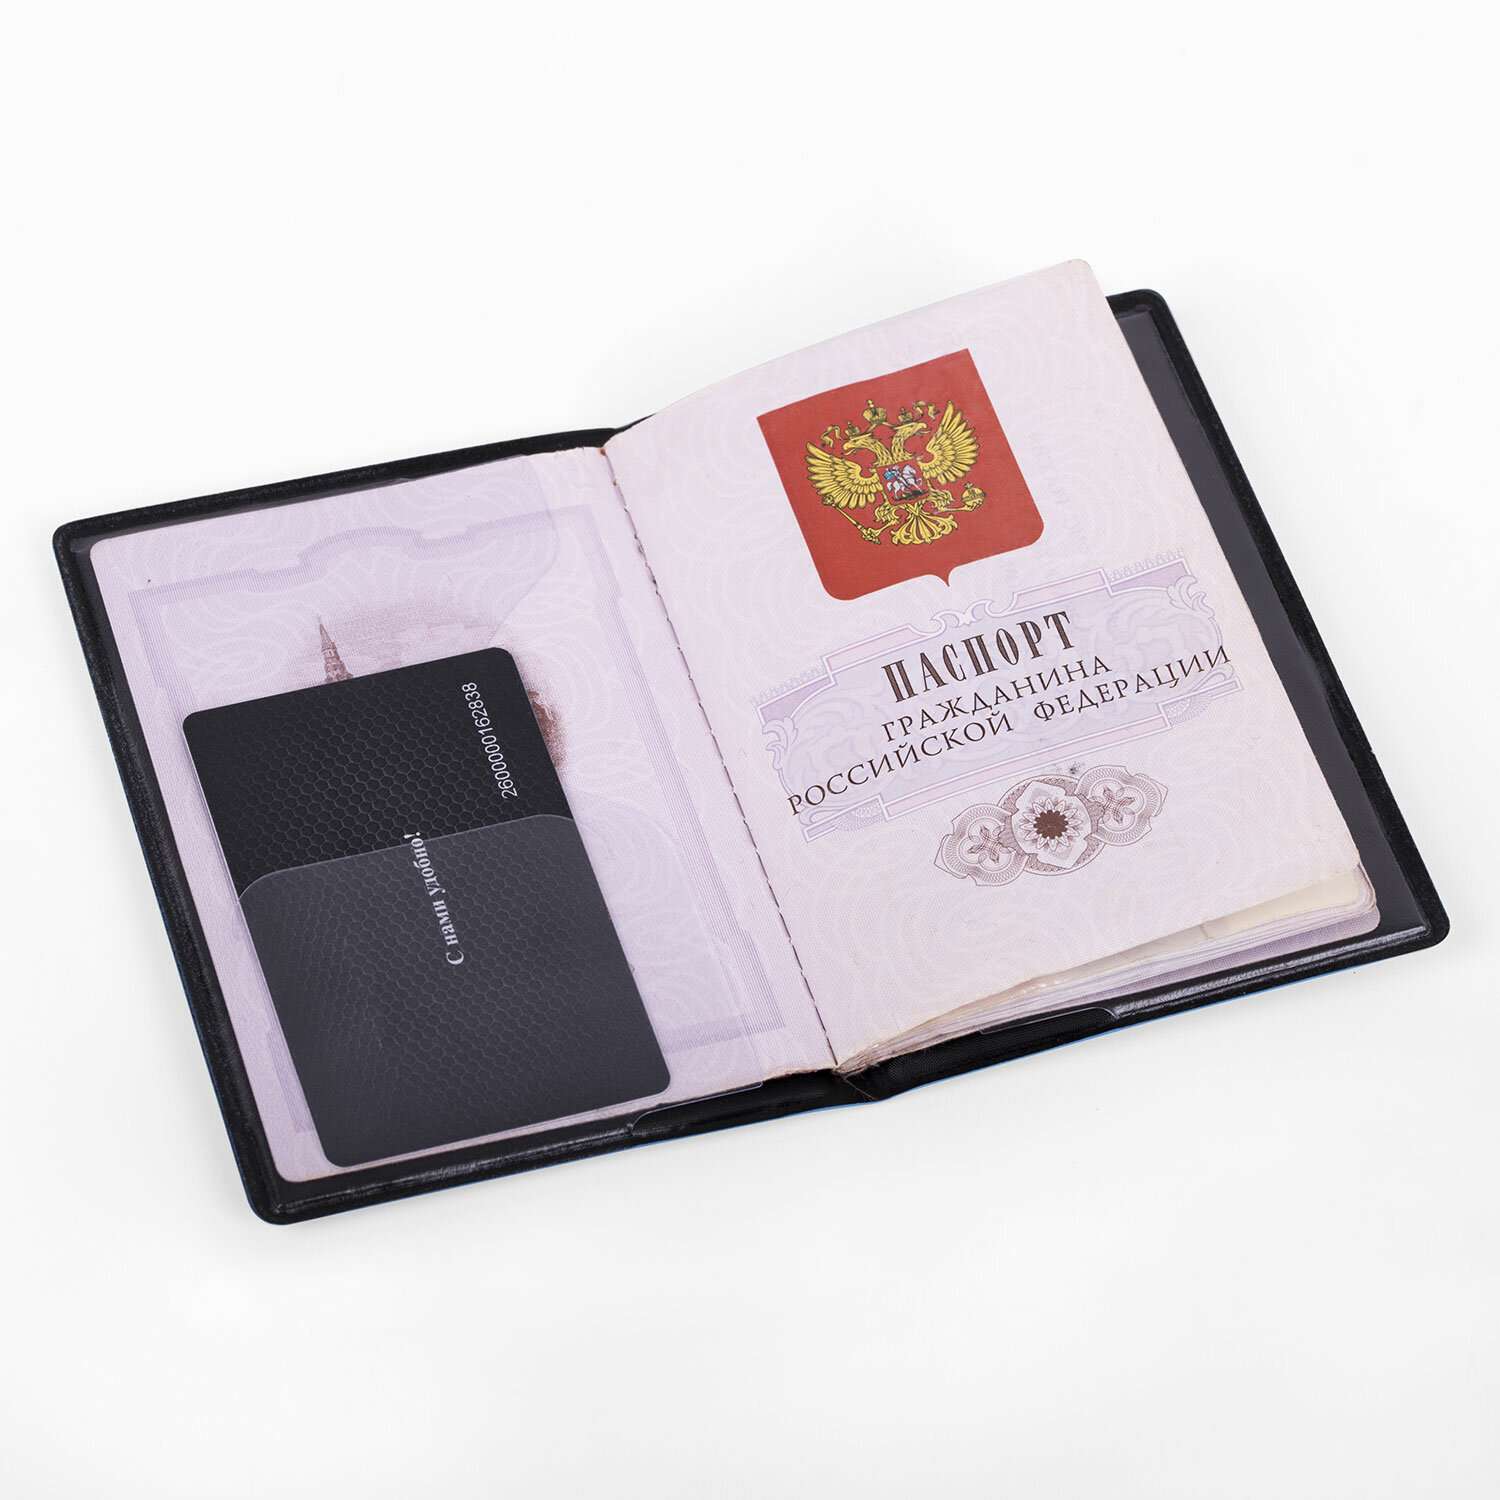 Обложка на паспорт Staff чехол - фото 5